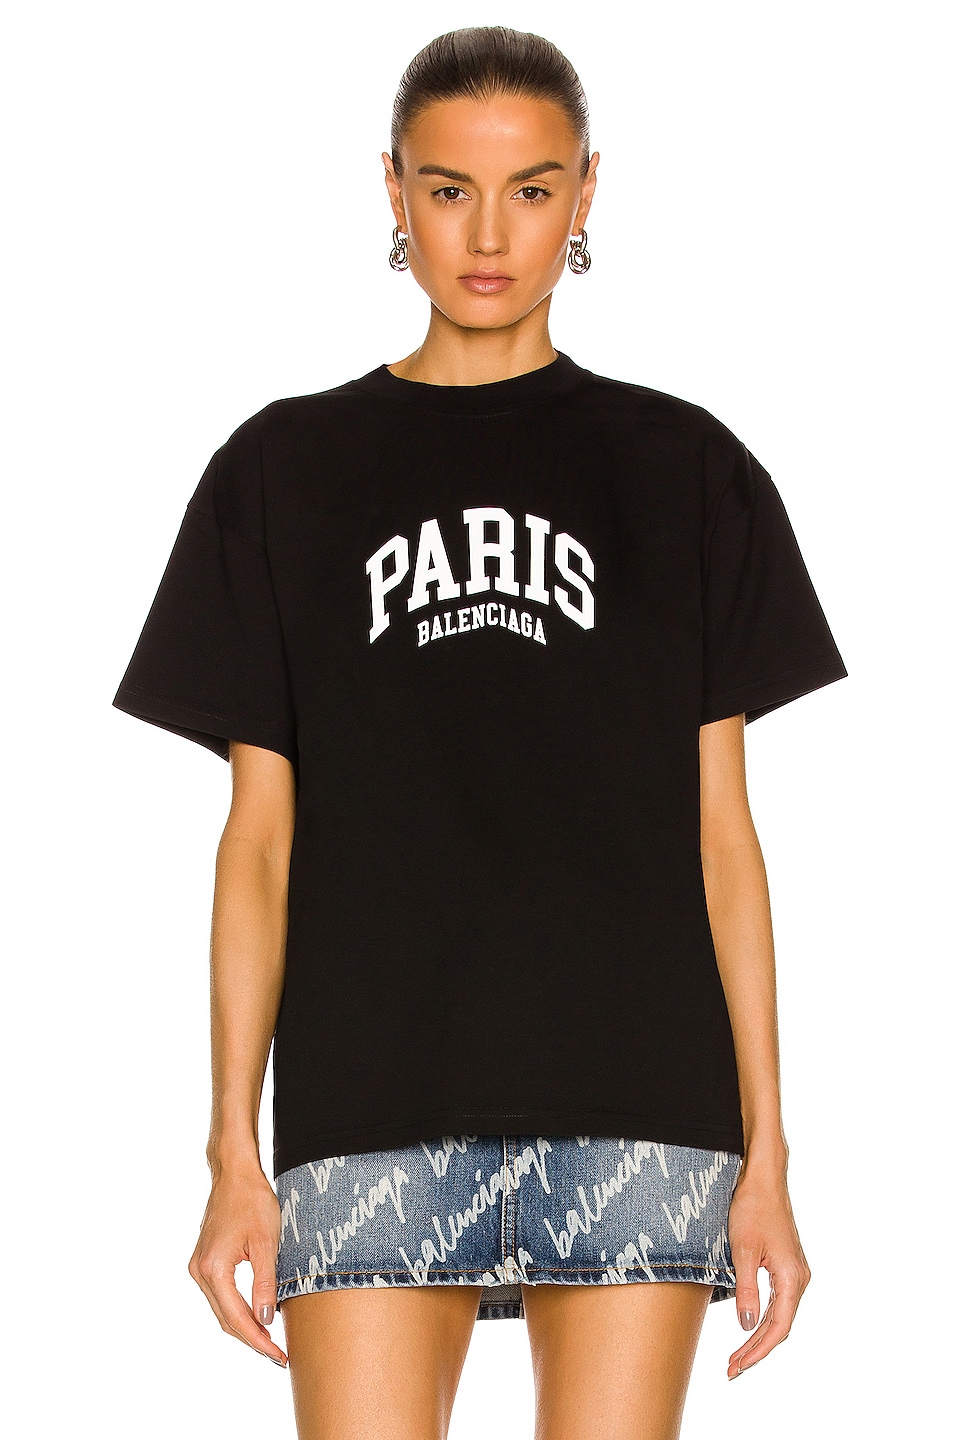 Balenciaga Paris Medium Fit T-Shirt in Black & White | FWRD